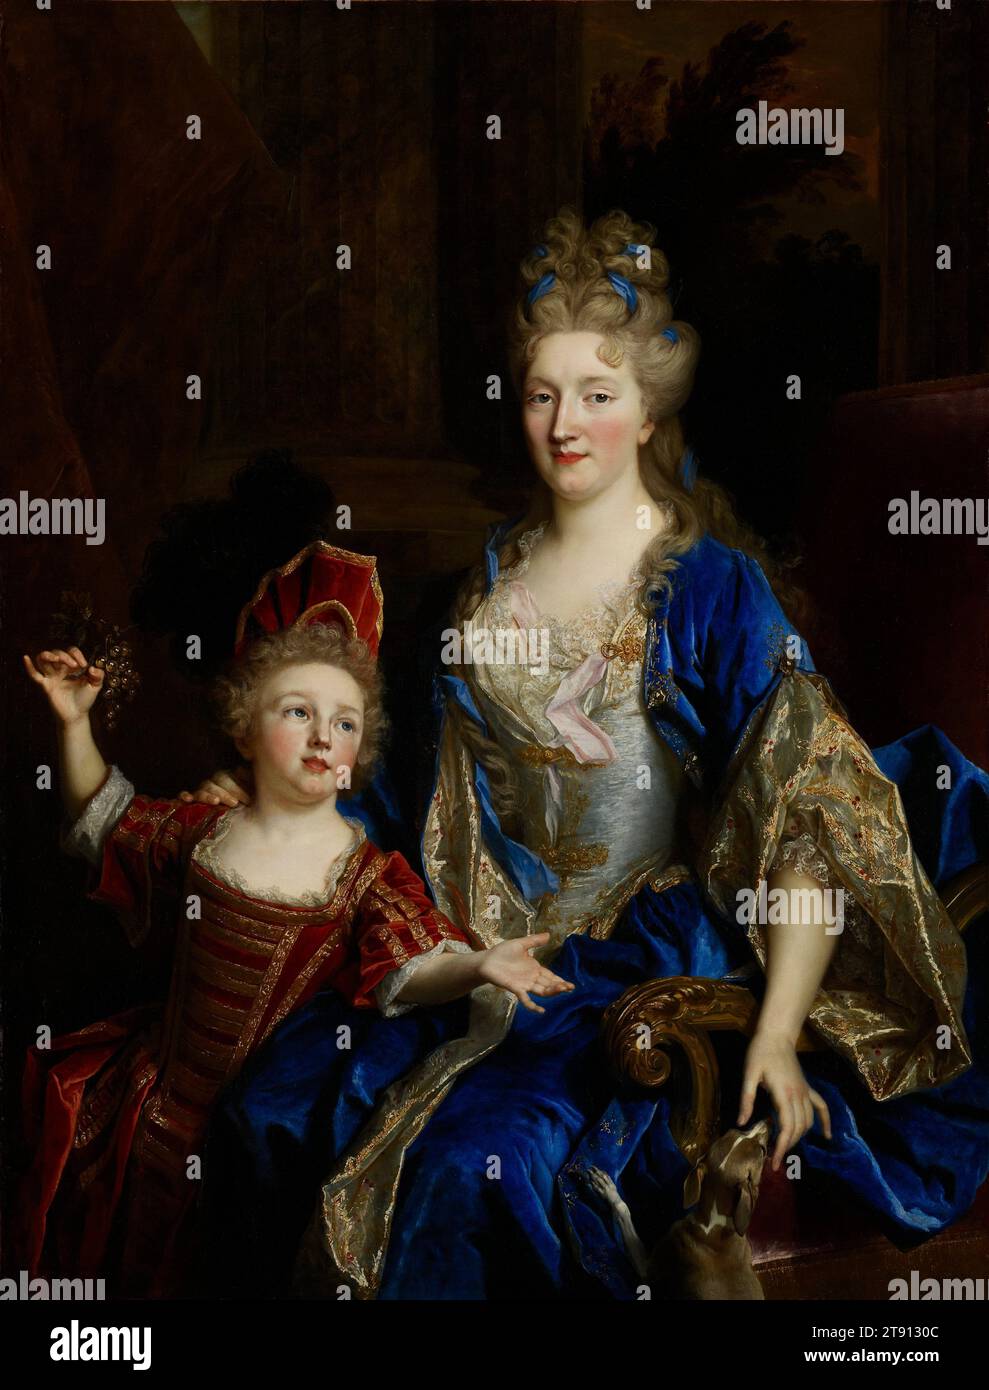 Portrait de Catherine Coustard, marquise de Castelnau, épouse de Charles-Léonor Aubry avec son fils Léonor, c. 1700, Nicolas de Largillière, français, 1656 - 1746, 53 1/4 x 40 3/4 po (135,26 x 103,51 cm) (vue)70 1/2 x 58 x 5 po (179,07 x 147,32 x 12,7 cm) (cadre extérieur), huile sur toile, France, 17e-18e siècle, Catherine Coustard (1673-1728), issu d'une famille de marchands de tissu aisés à Paris, marié dans la famille Aubry de riches fonctionnaires de la classe moyenne et hommes d'État de Tours. Assise, souriante, avec son fils penché sur ses genoux, elle est l’image du contentement. Banque D'Images